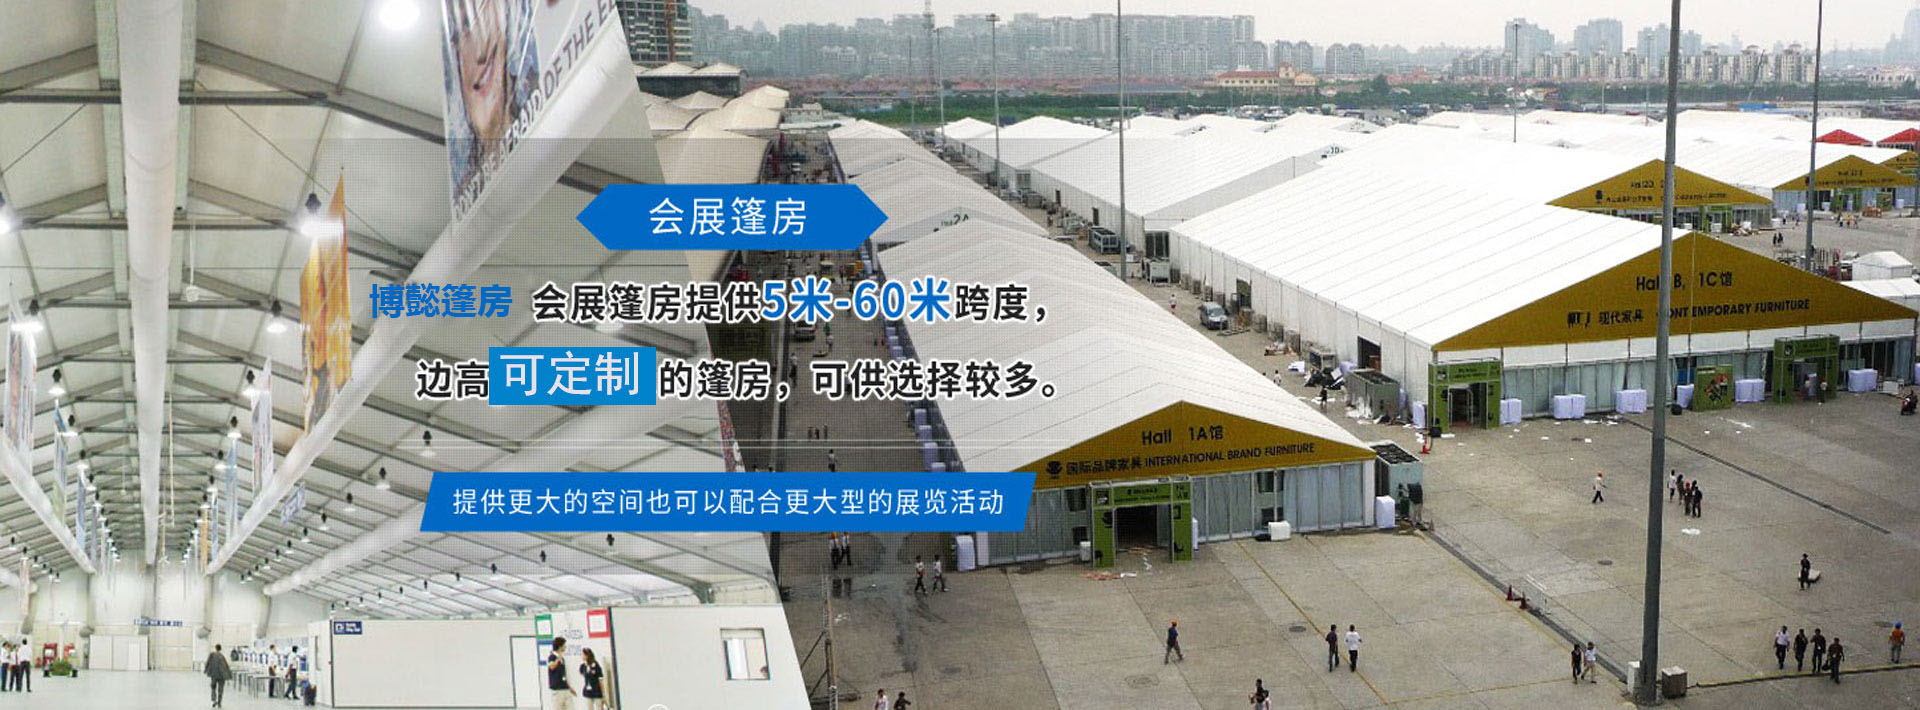 上海博懿篷房技术有限公司